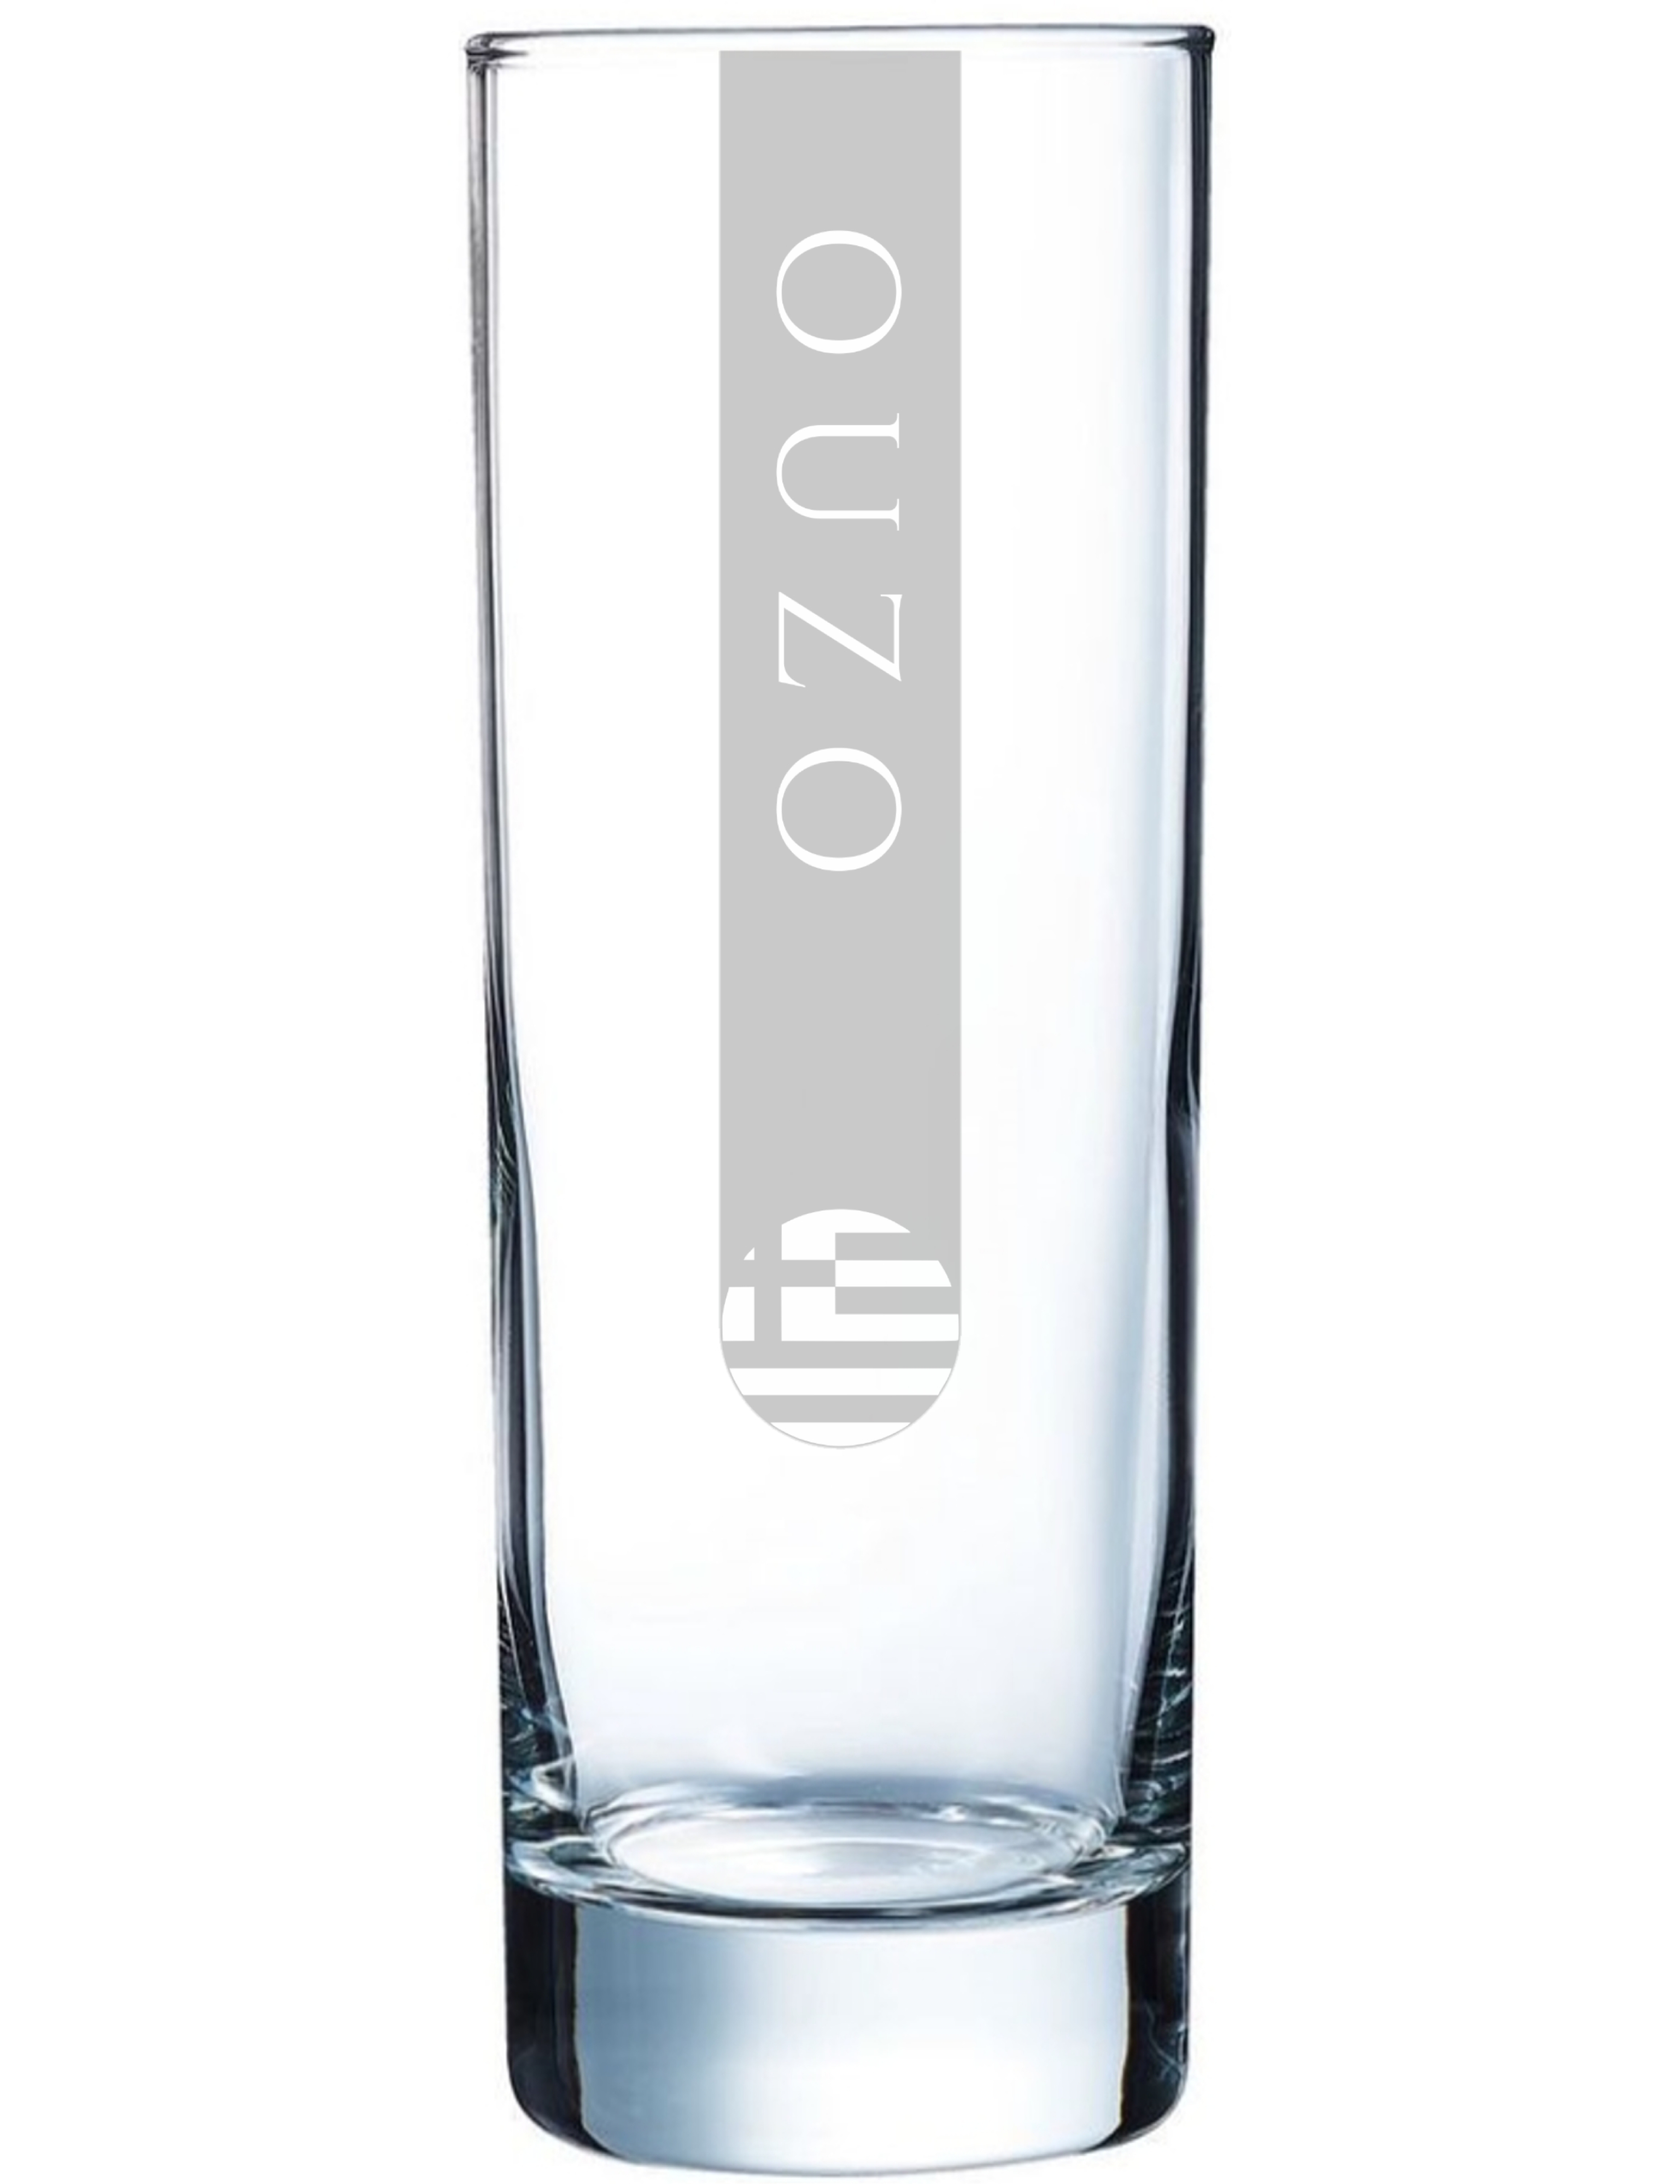 OUZO Gläser Greek Flag | 6 Stück 170ml Stölzle Ouzo Glas 